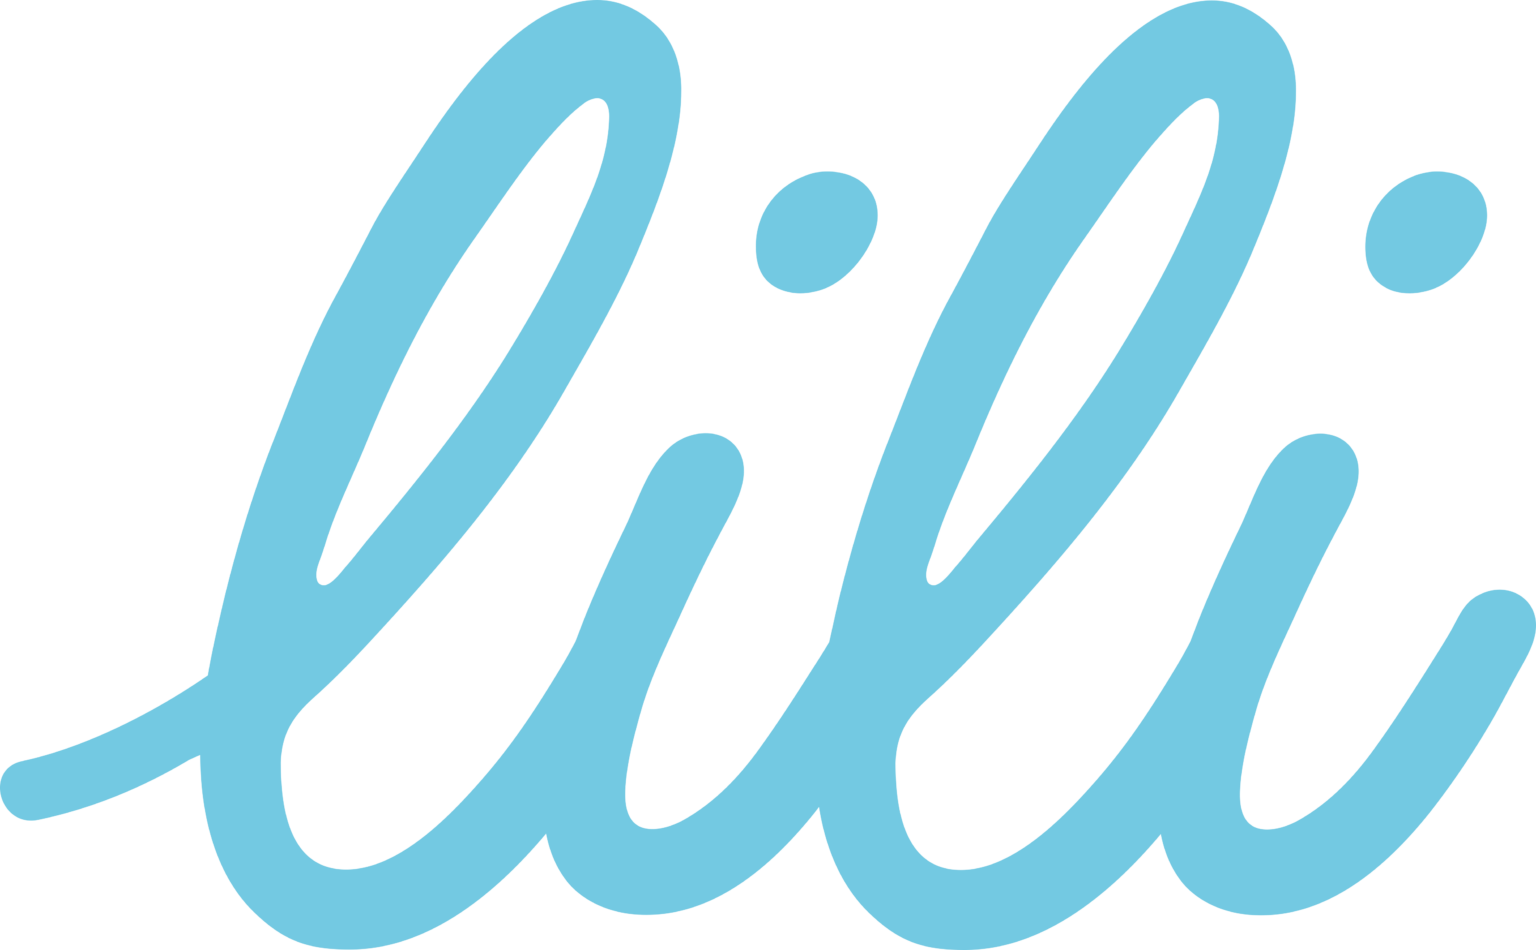 Lili Bank – Logos Download